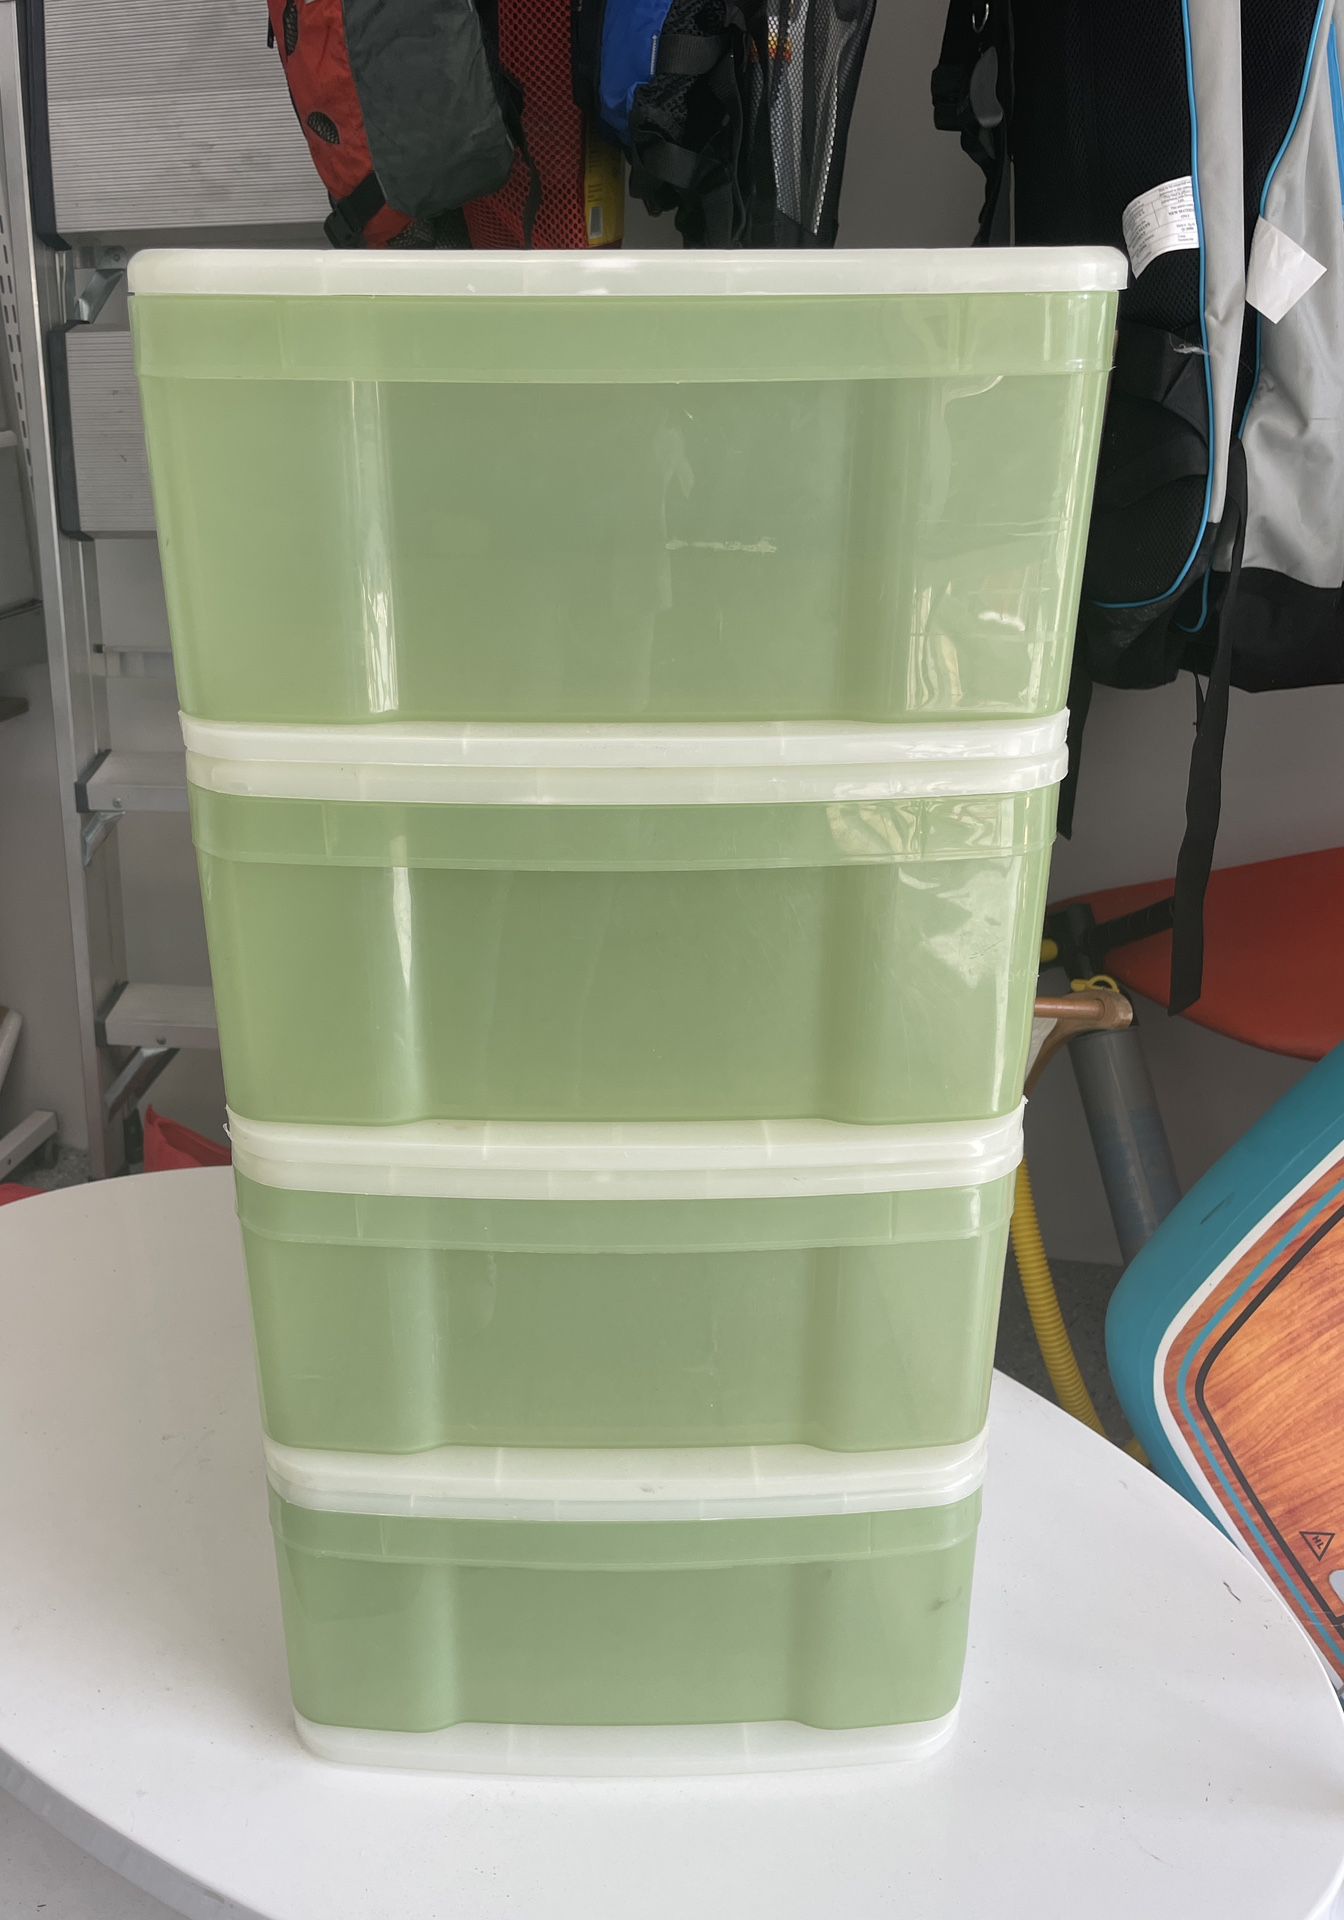 Set of 4 storage bins, stackable